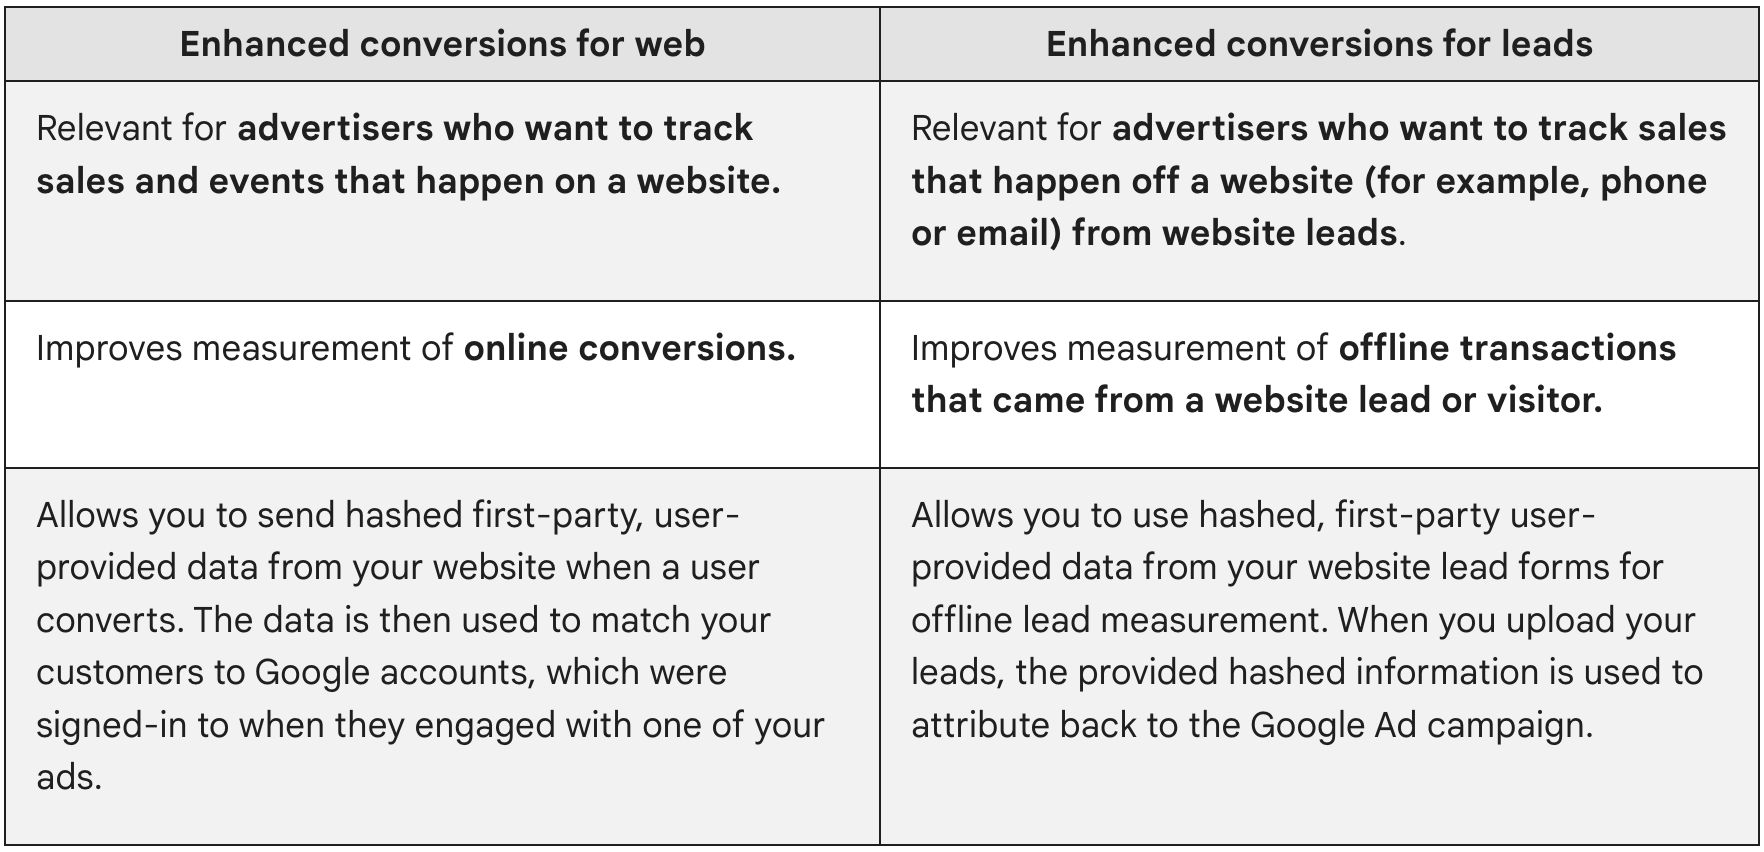 Le conversioni avanzate per il web sono pertinenti per gli inserzionisti che vogliono monitorare le vendite e gli eventi che si verificano su un sito web. Le conversioni avanzate per i lead sono pertinenti per gli inserzionisti che vogliono monitorare le vendite generate dai lead provenienti da un sito web (ad es. telefono o email).